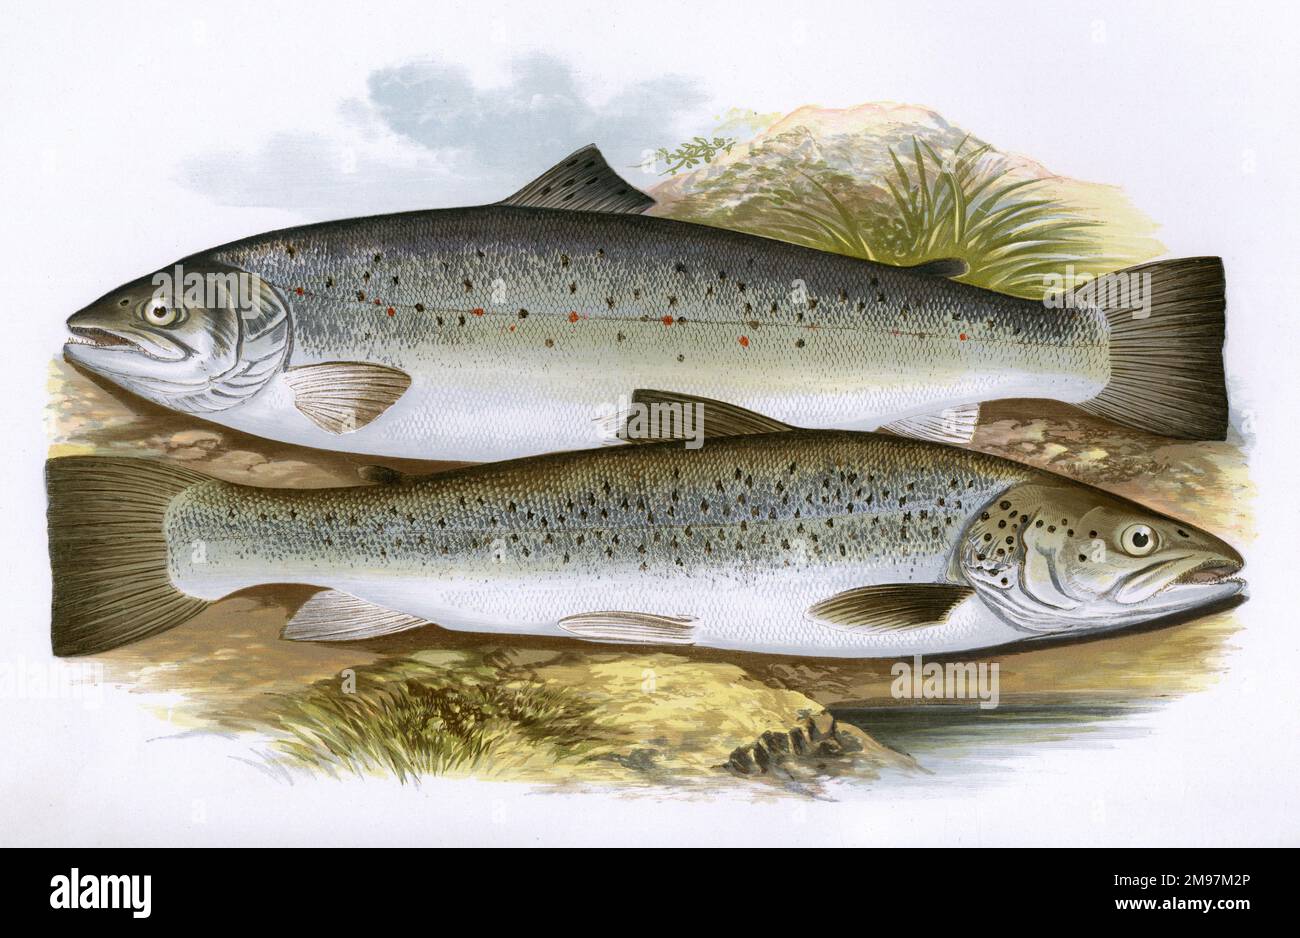 Short-Headed Salmon (Salmo trutta trutta) and Silvery Salmon (Salmo schiefermuelleri). Stock Photo